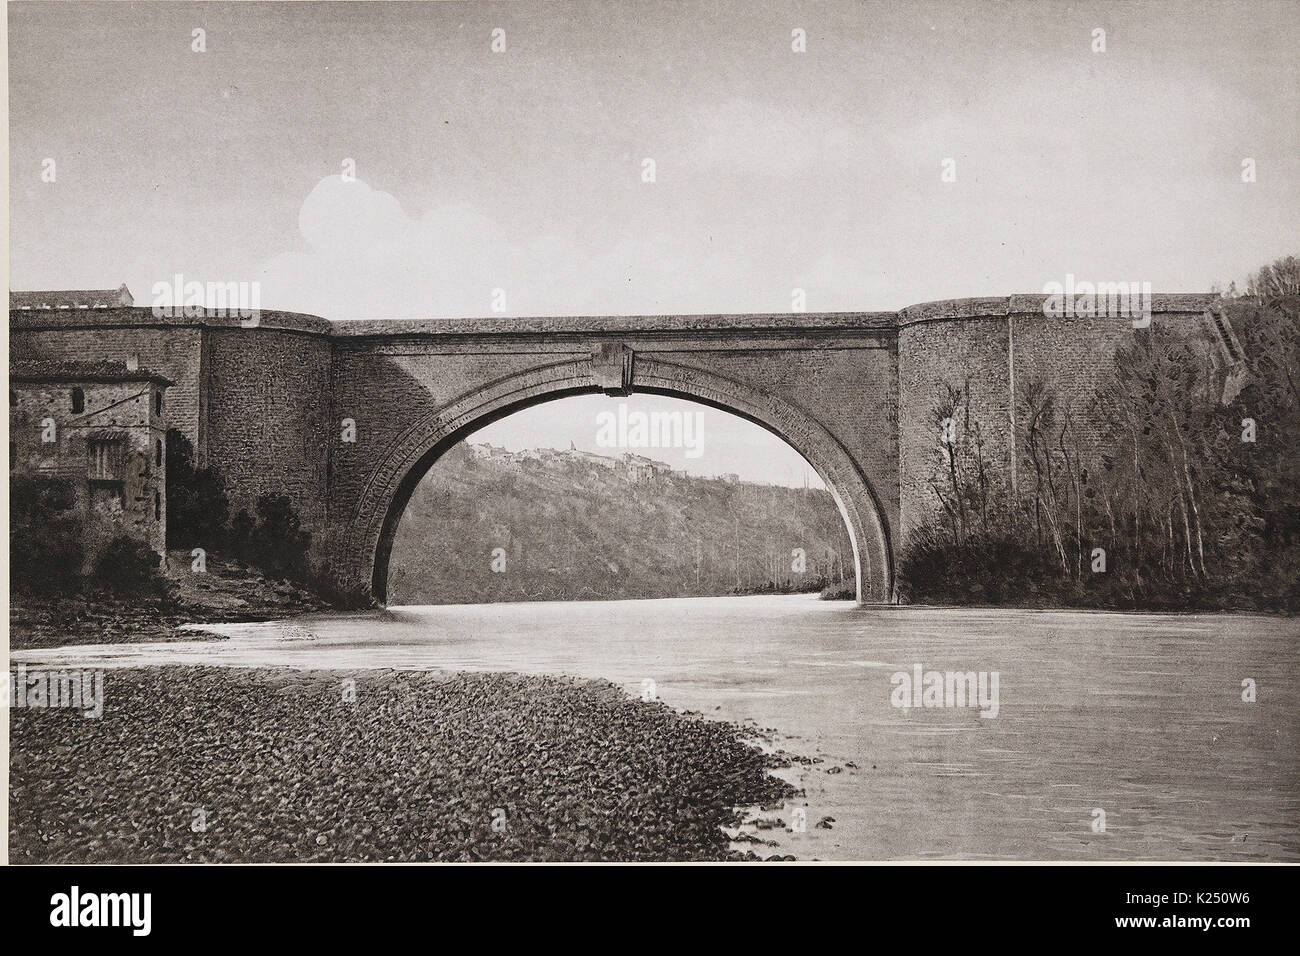 Pont de Lavaur - Les travaux publics de la France, 1883 Foto Stock